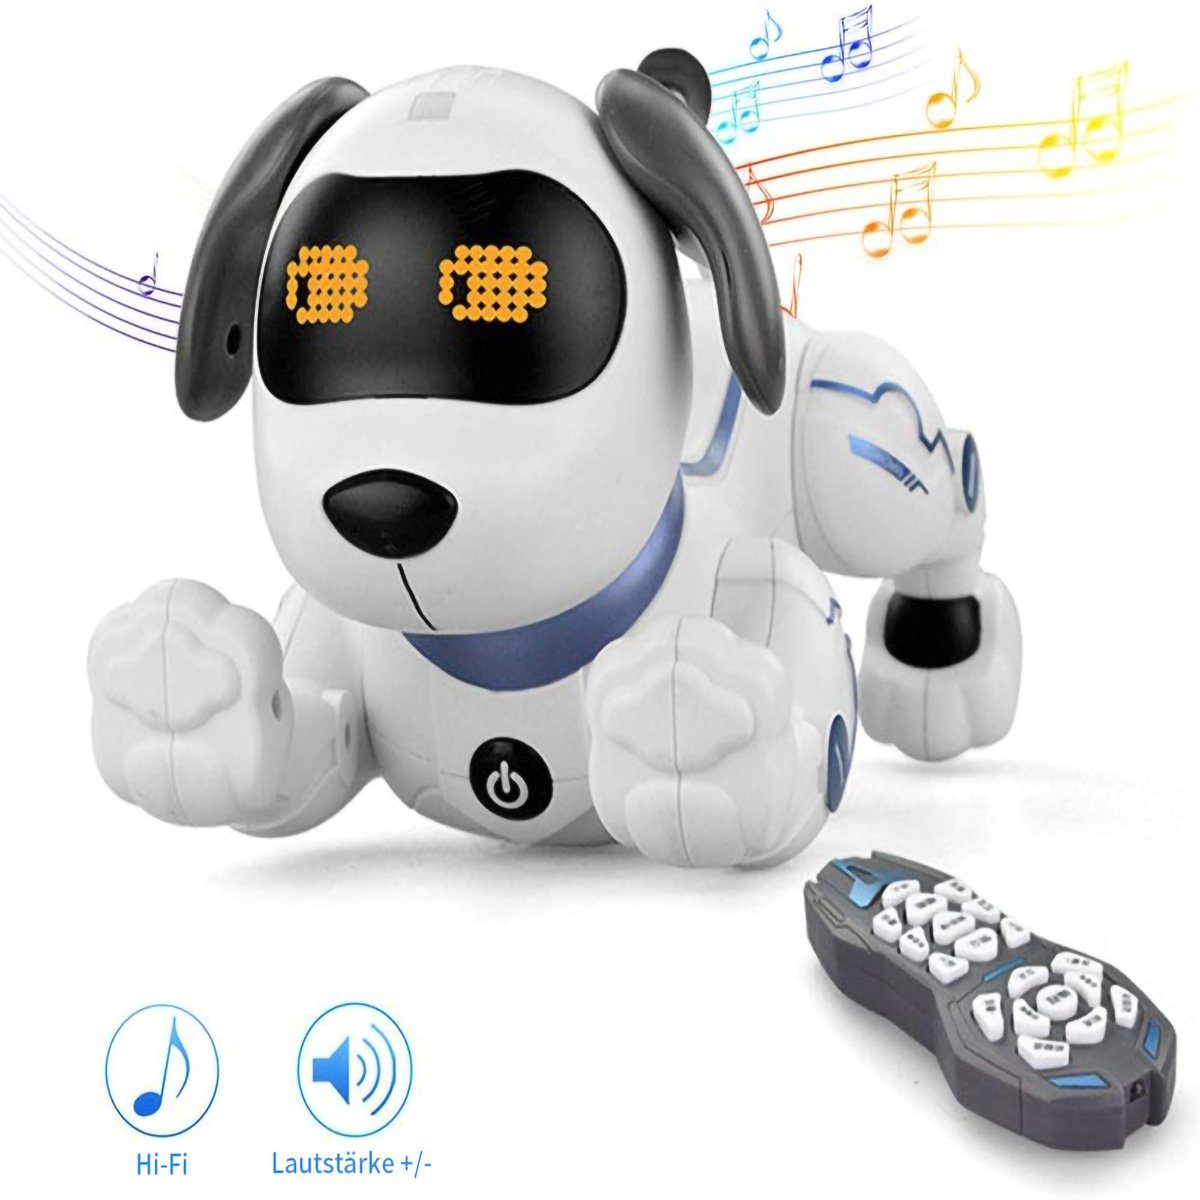 yozhiqu RC-Roboter Sprachgesteuerter ferngesteuerter intelligenter Stunt-Roboterhund, Programmierbare Aktionen,intelligente Interaktion,Geschenke für Kinder